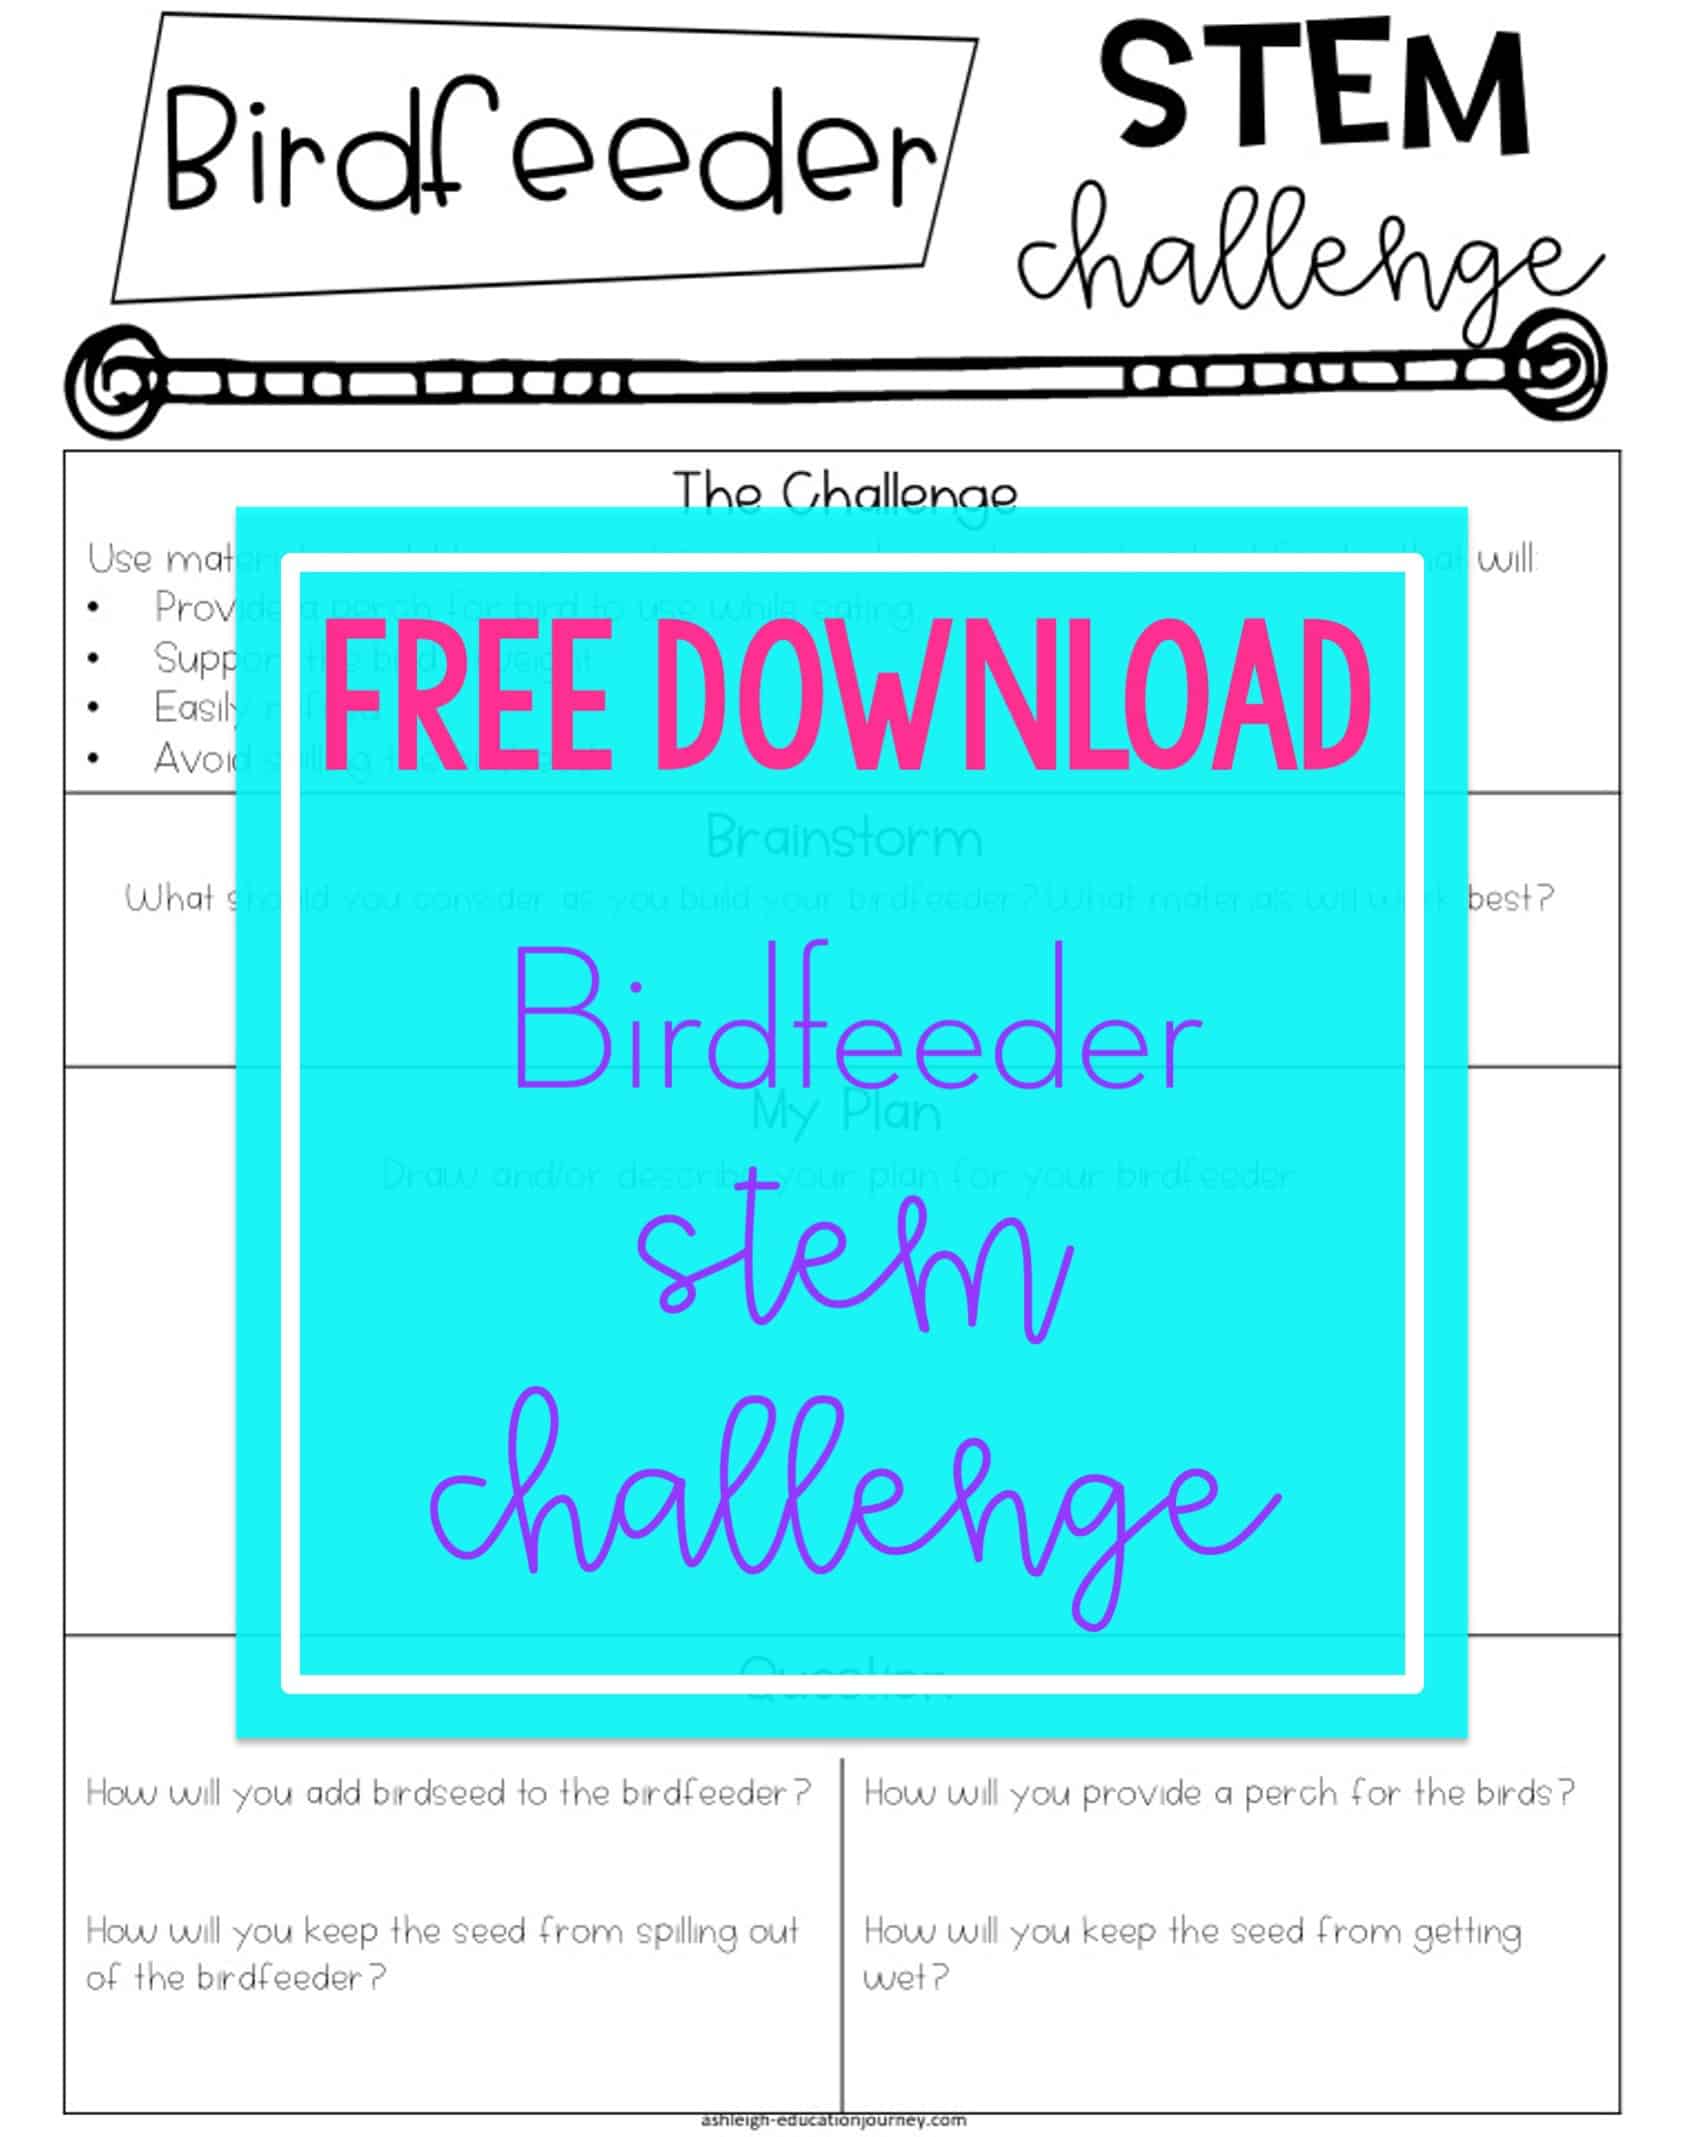 Free Download: Birdfeeder STEM Challenge